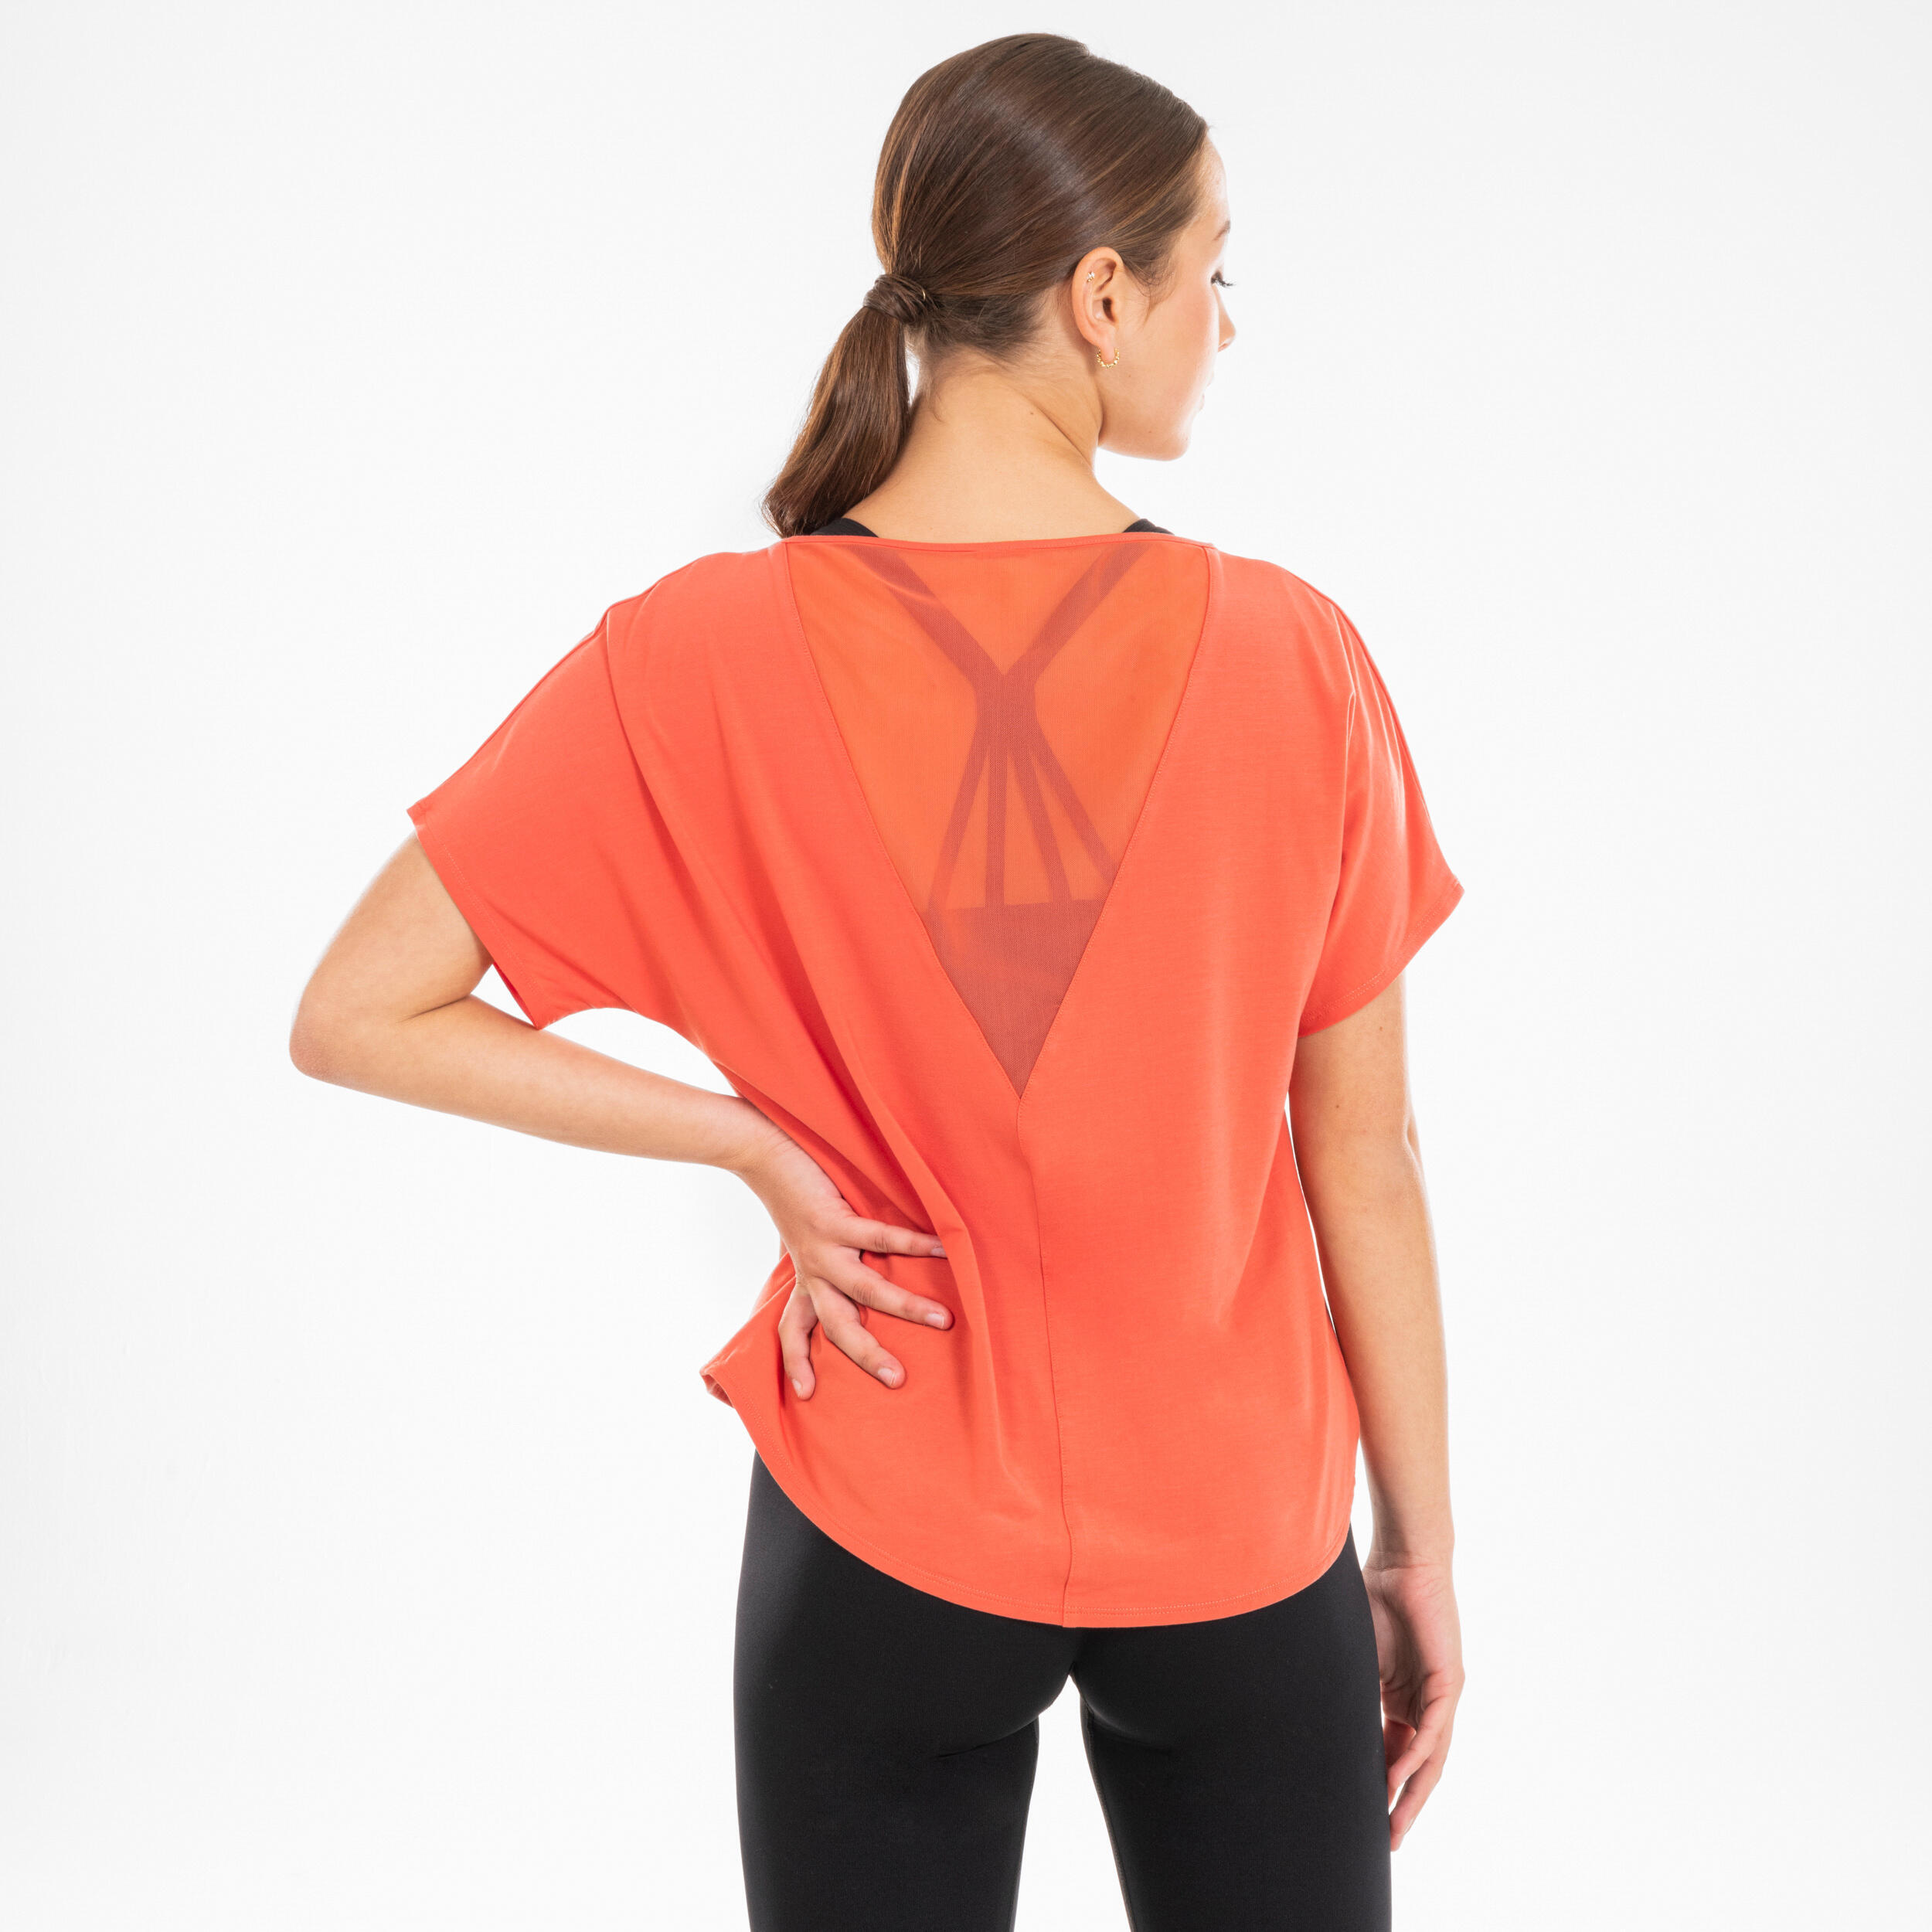 STAREVER Women's Modern Dance Loose-Fit Short-Sleeved T-Shirt - Orange